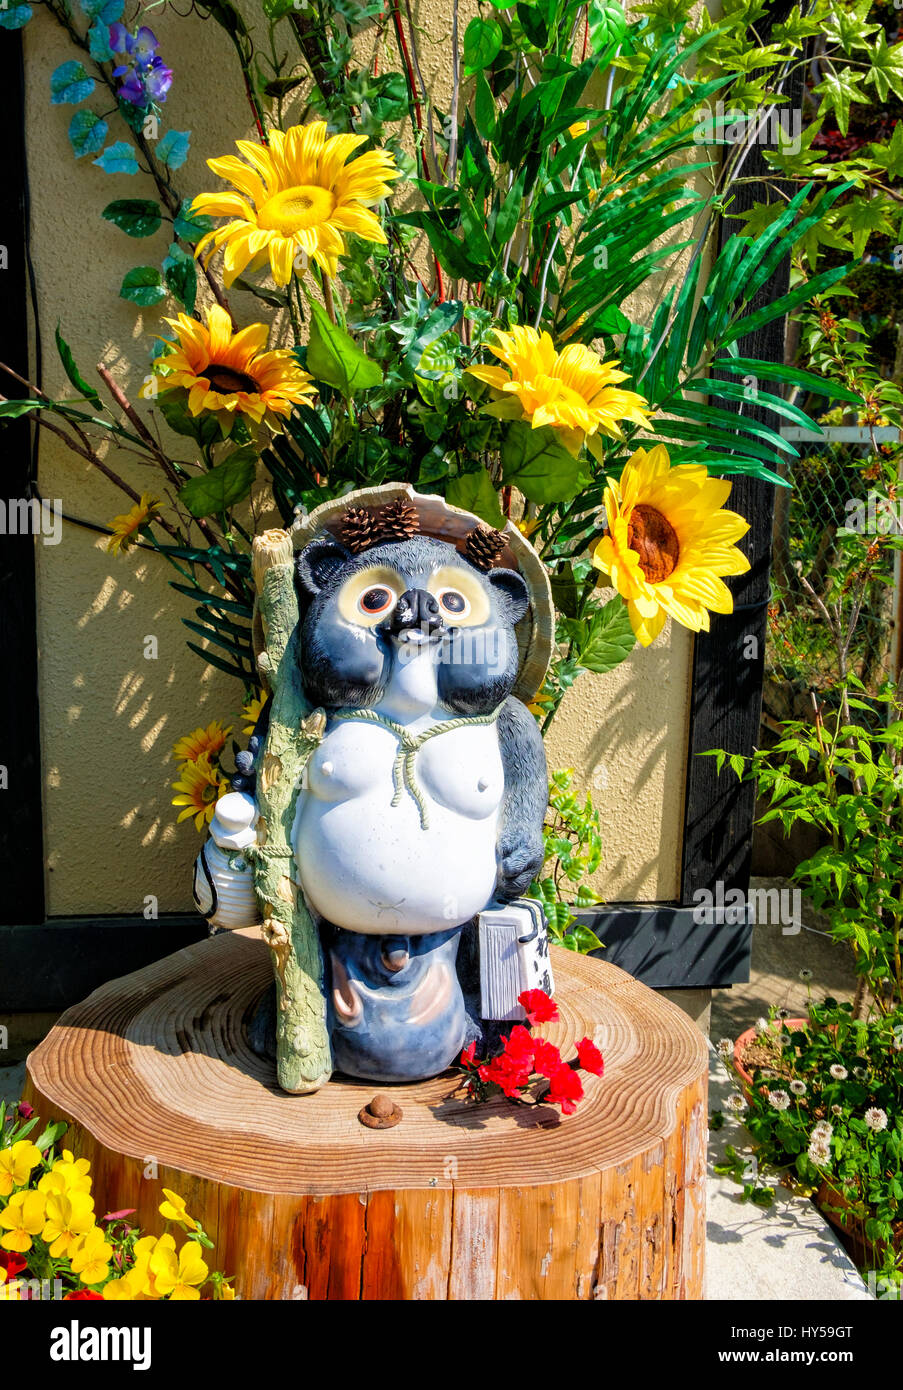 Tanuki estatuas son ornamentos de jardín común en Japón. Tanuki, o japonés racoon perros mapaches (independientes o perros) son comunes en el folclore japonés. Foto de stock